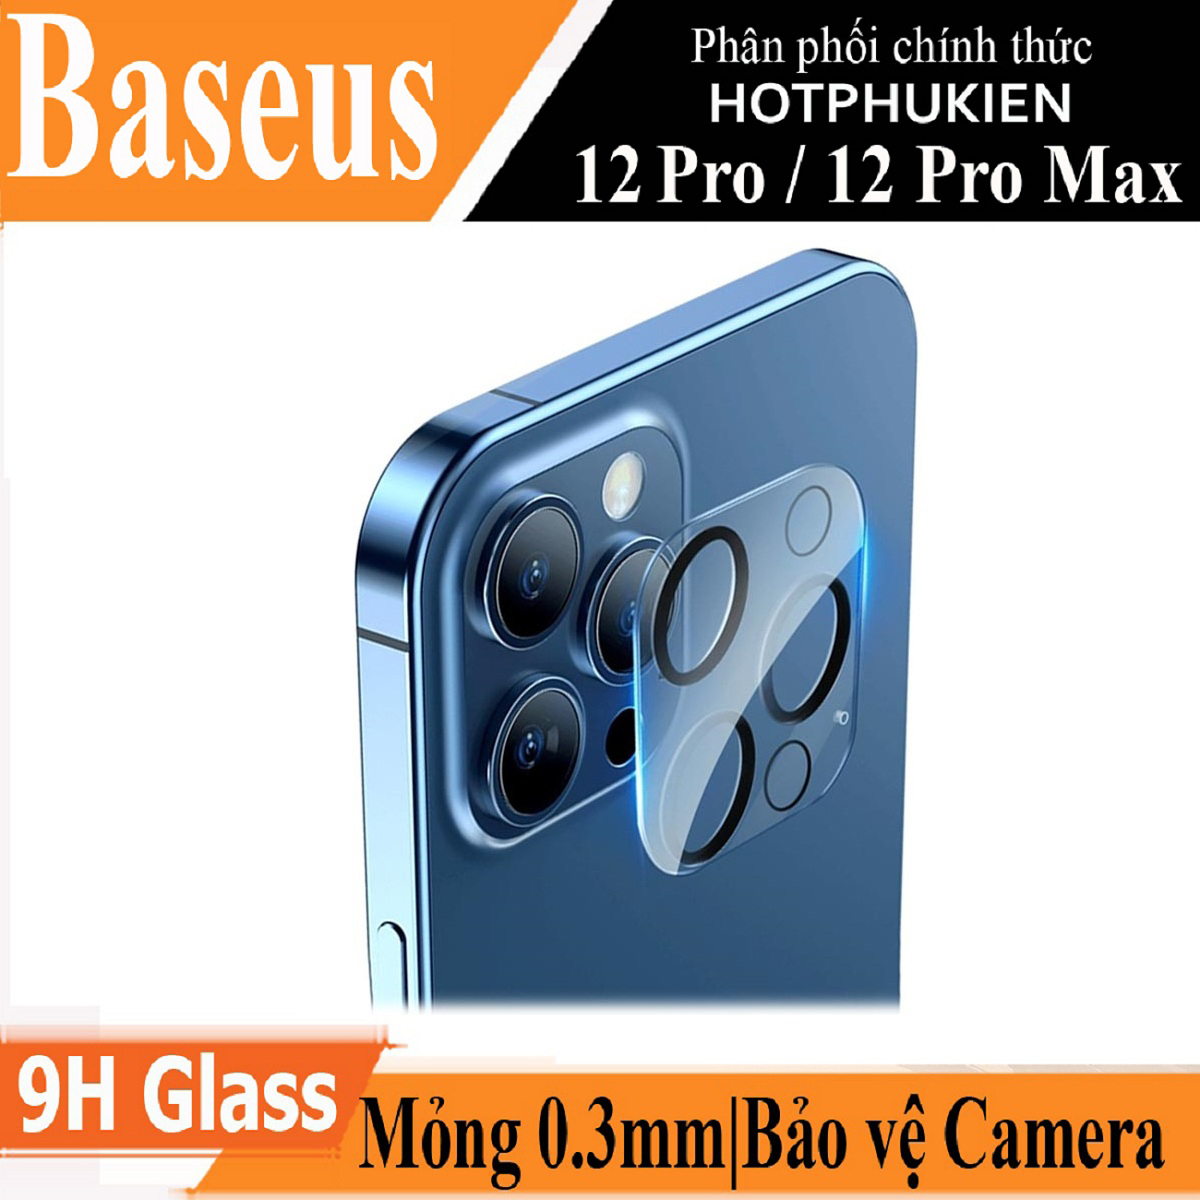 Miếng dán kính cường lực bảo vệ Camera cho iPhone 12 Pro Max hiệu Baseus Full-Frame Lens Film